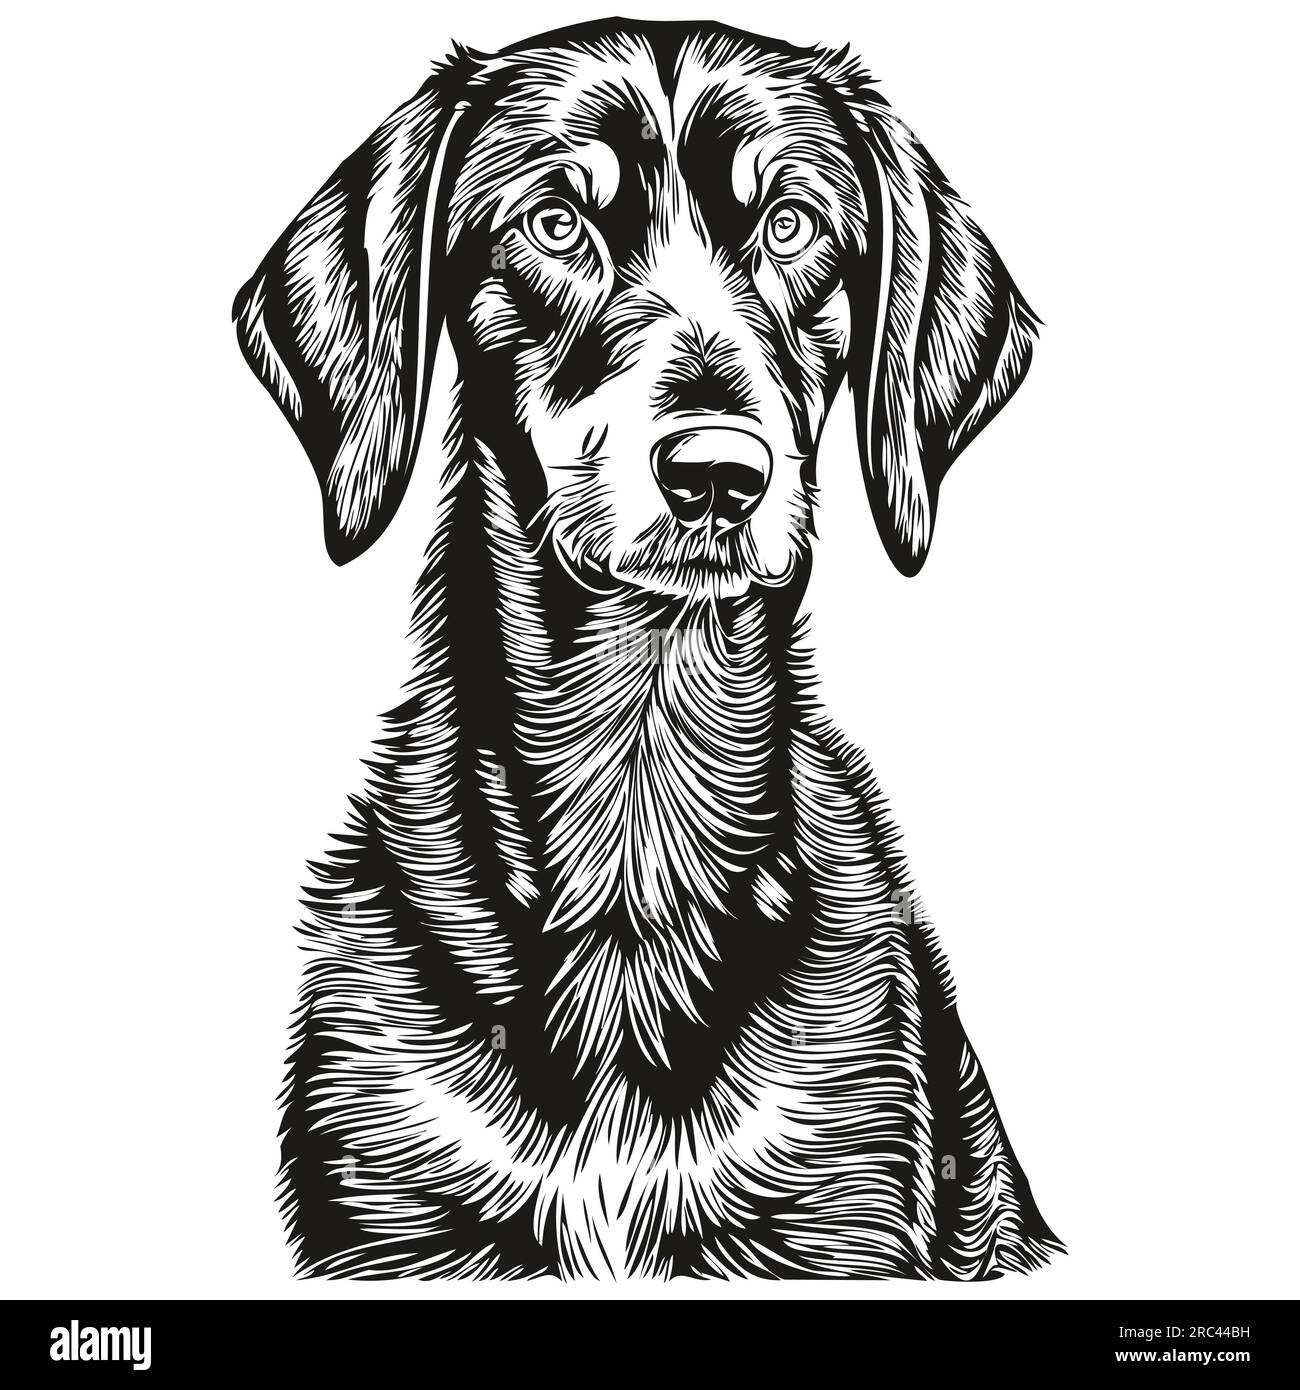 Dessin au trait de race de chien noir et tan Coonhound, dessin à la main d'animal clip art dessin à la main dessin noir et blanc Illustration de Vecteur